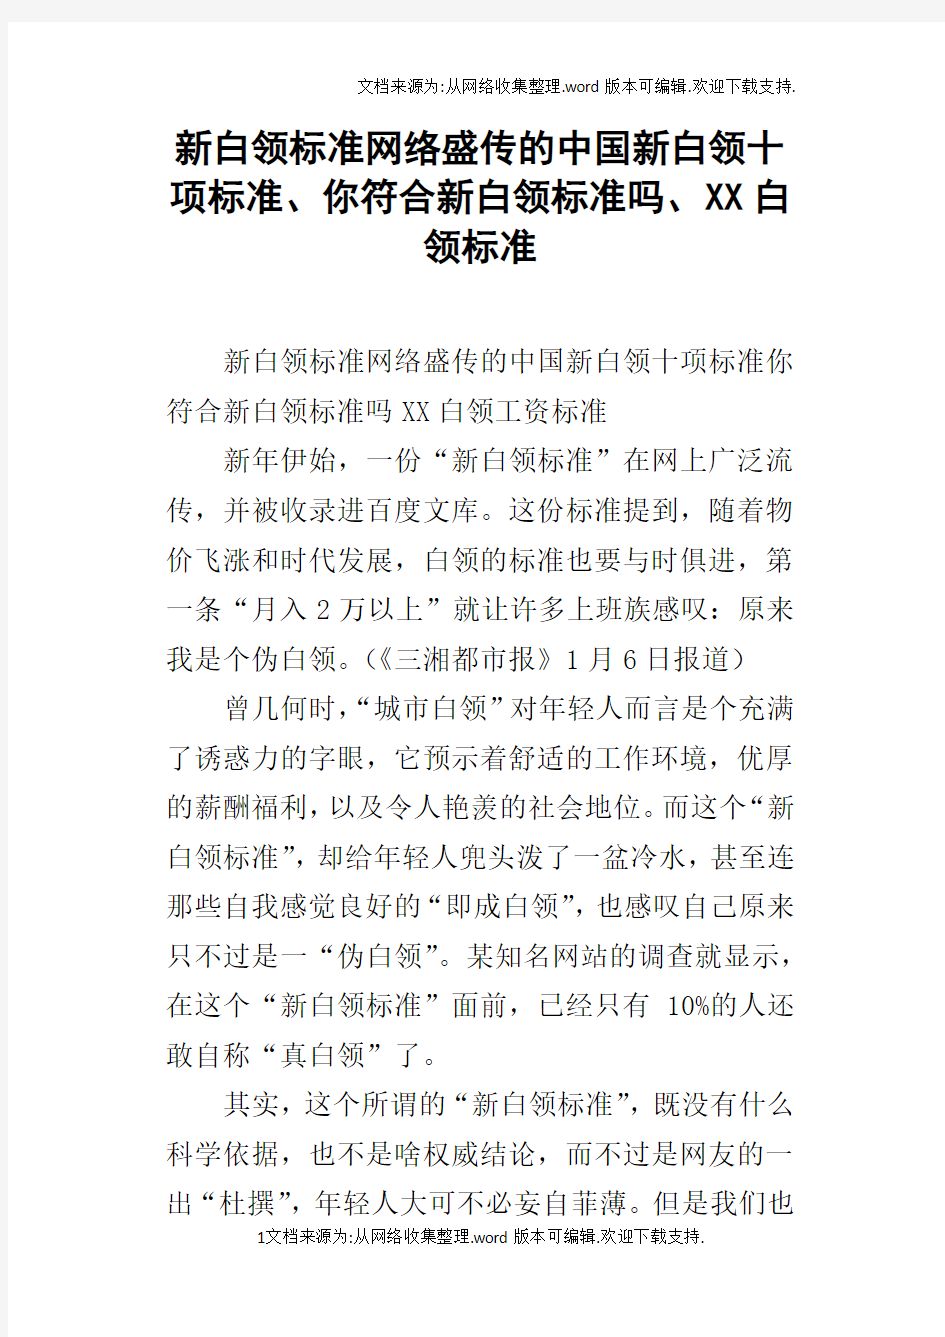 新白领标准网络盛传的中国新白领十项标准、你符合新白领标准吗、XX白领标准